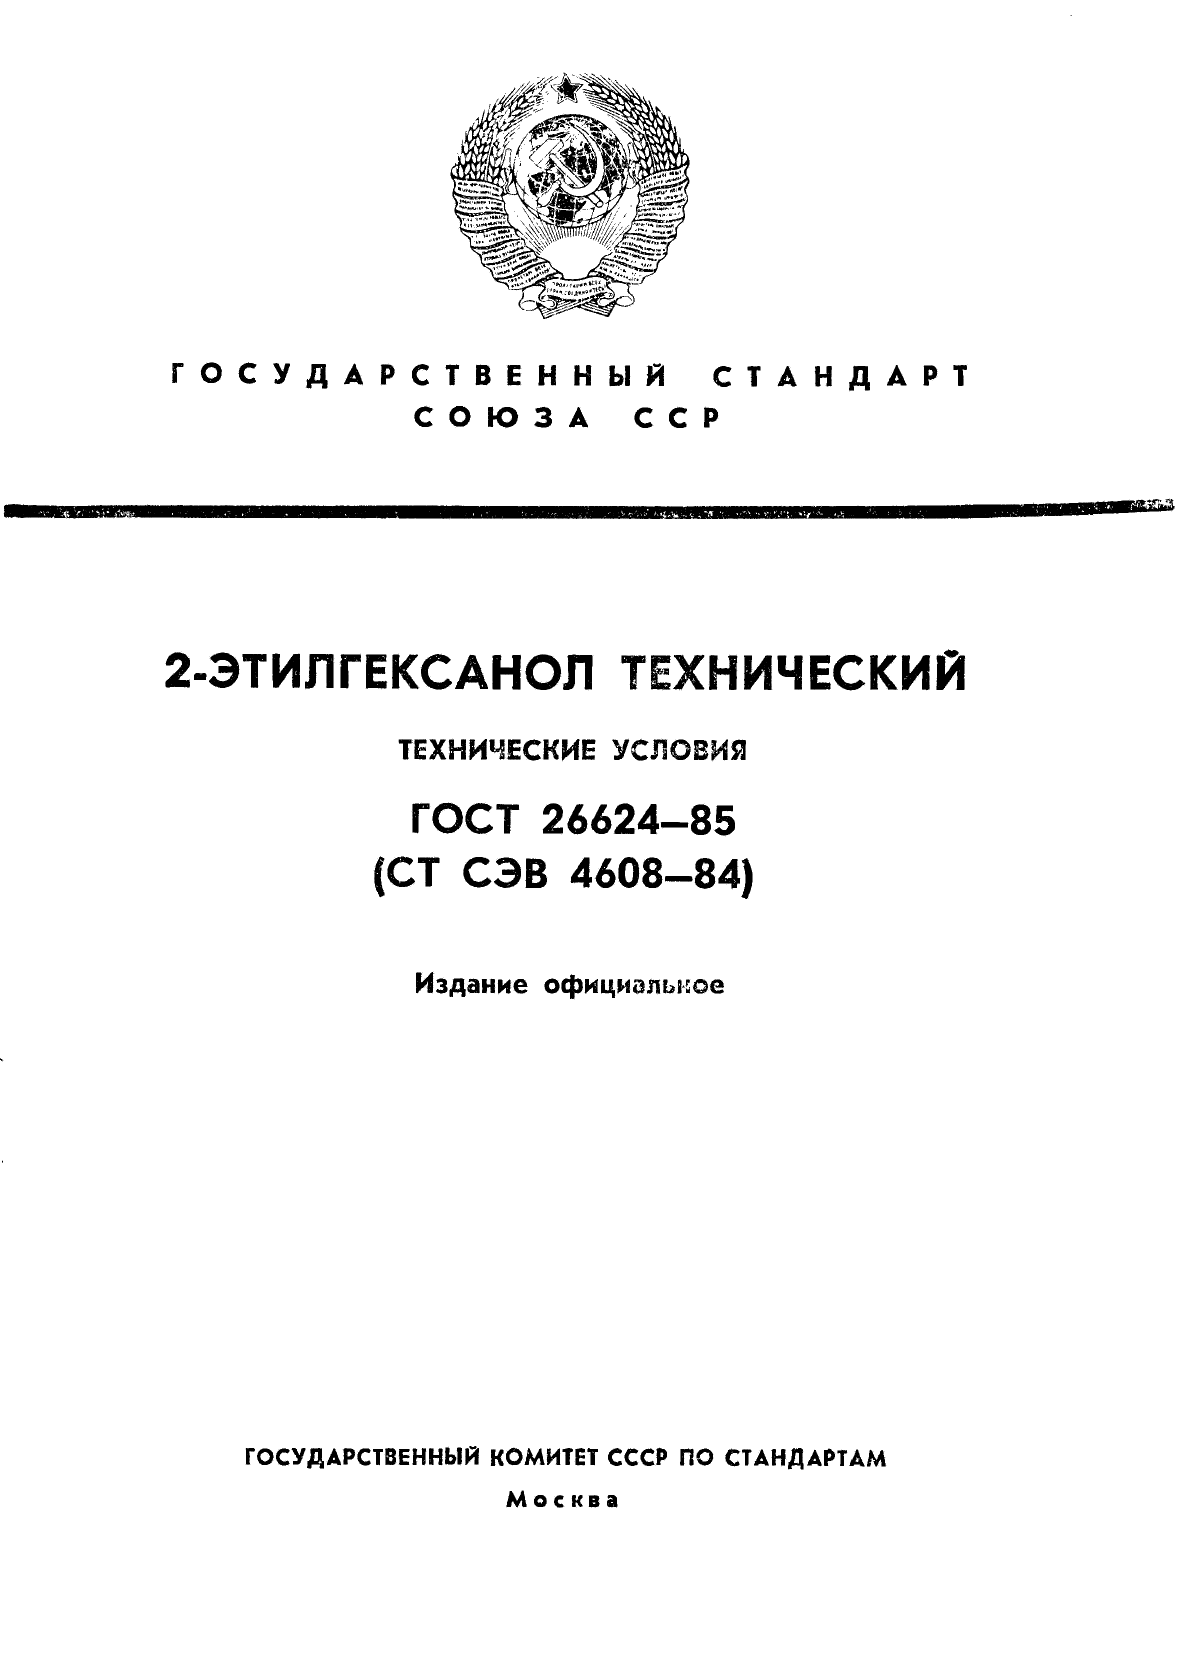  26624-85,  1.